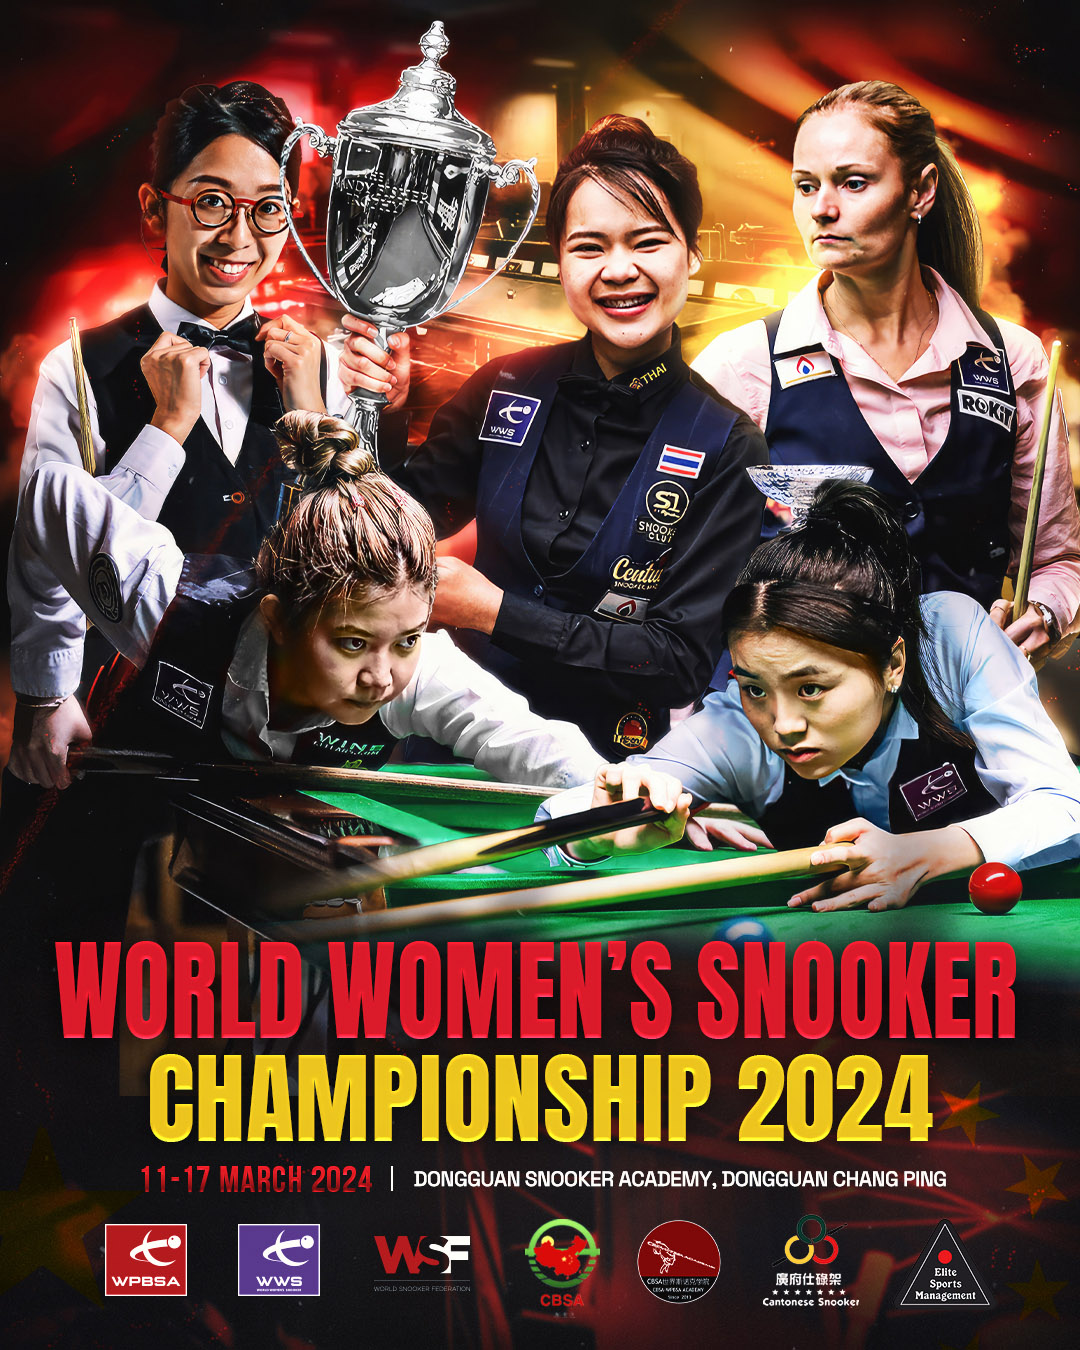 World Women’s Snooker Championship 2024 Enter Now World Women's Snooker